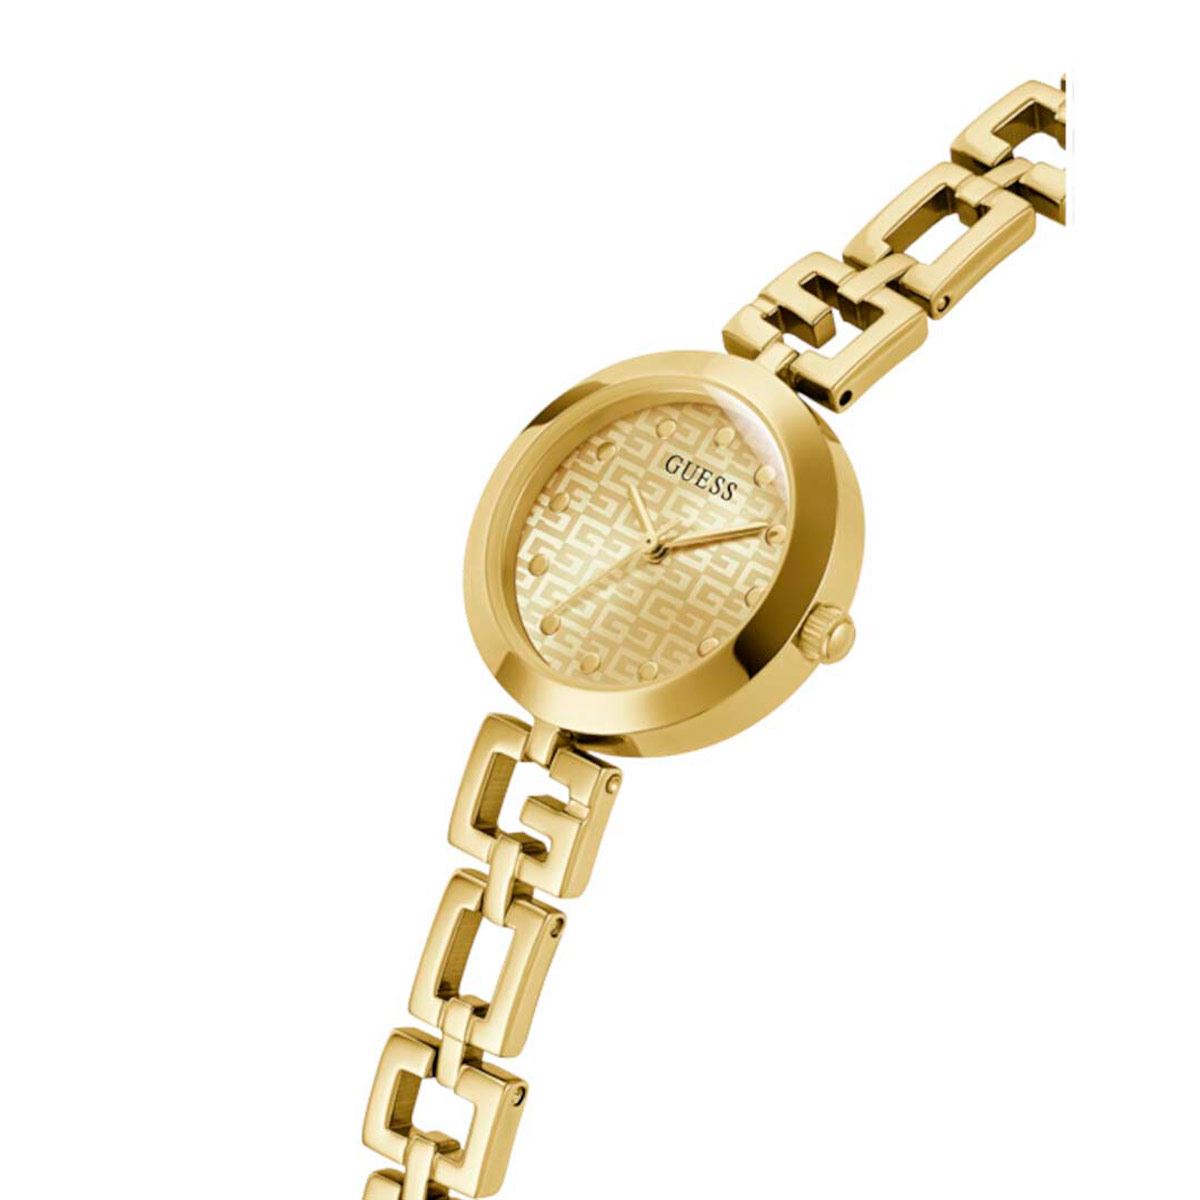 Reloj Guess GW0549L2 correa de acero inoxidable color dorado